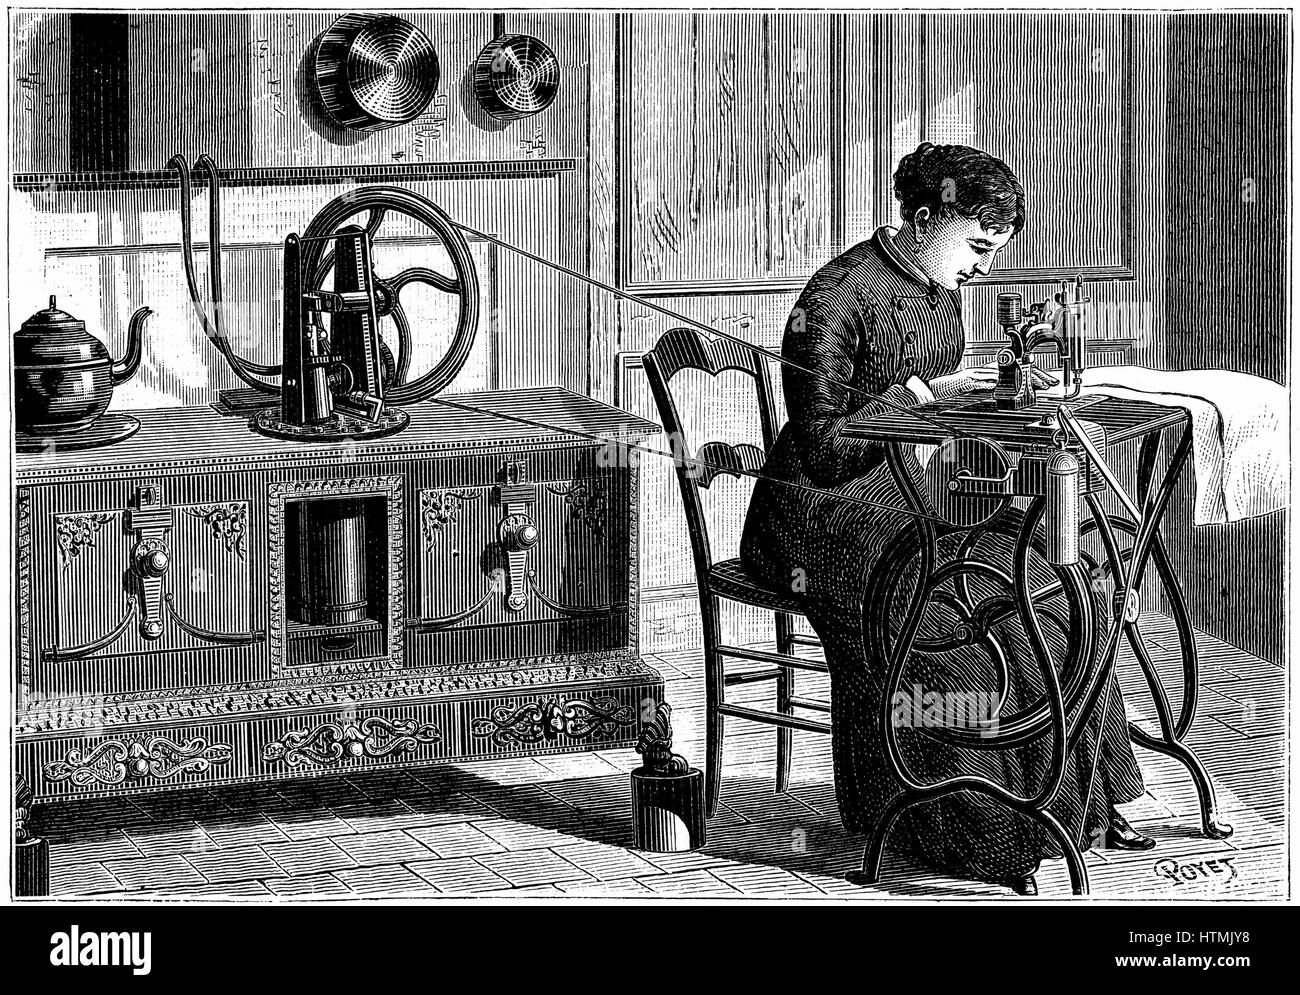 Daussin der Dampf Motor erhitzt auf dem Küchenherd, wird verwendet, um eine Nähmaschine macht. Gravur veröffentlicht Paris, 1883 Stockfoto